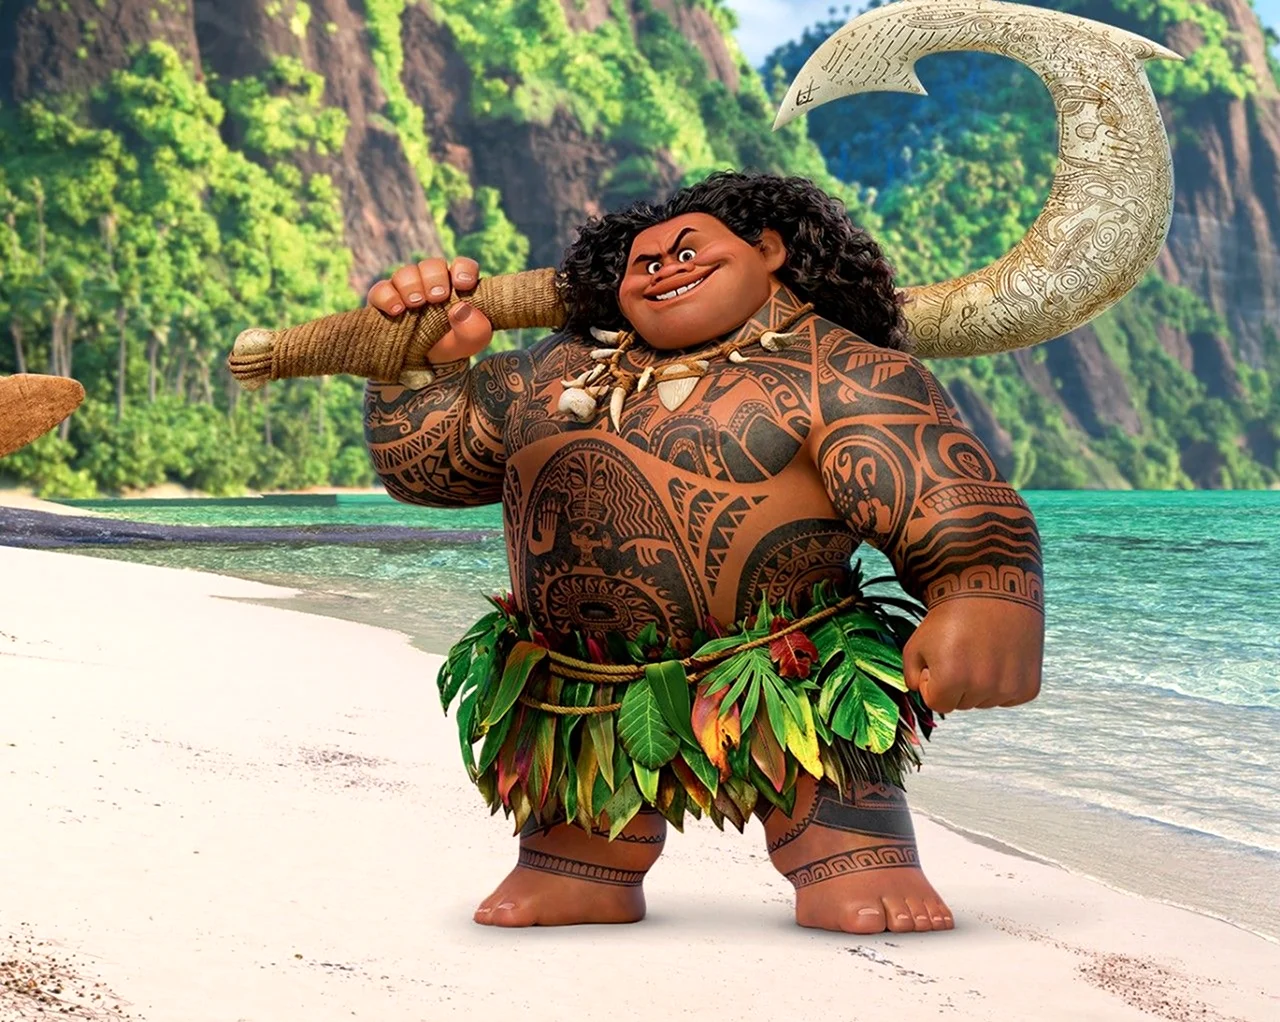 Моана Бог Мауи. Картинка из мультфильма